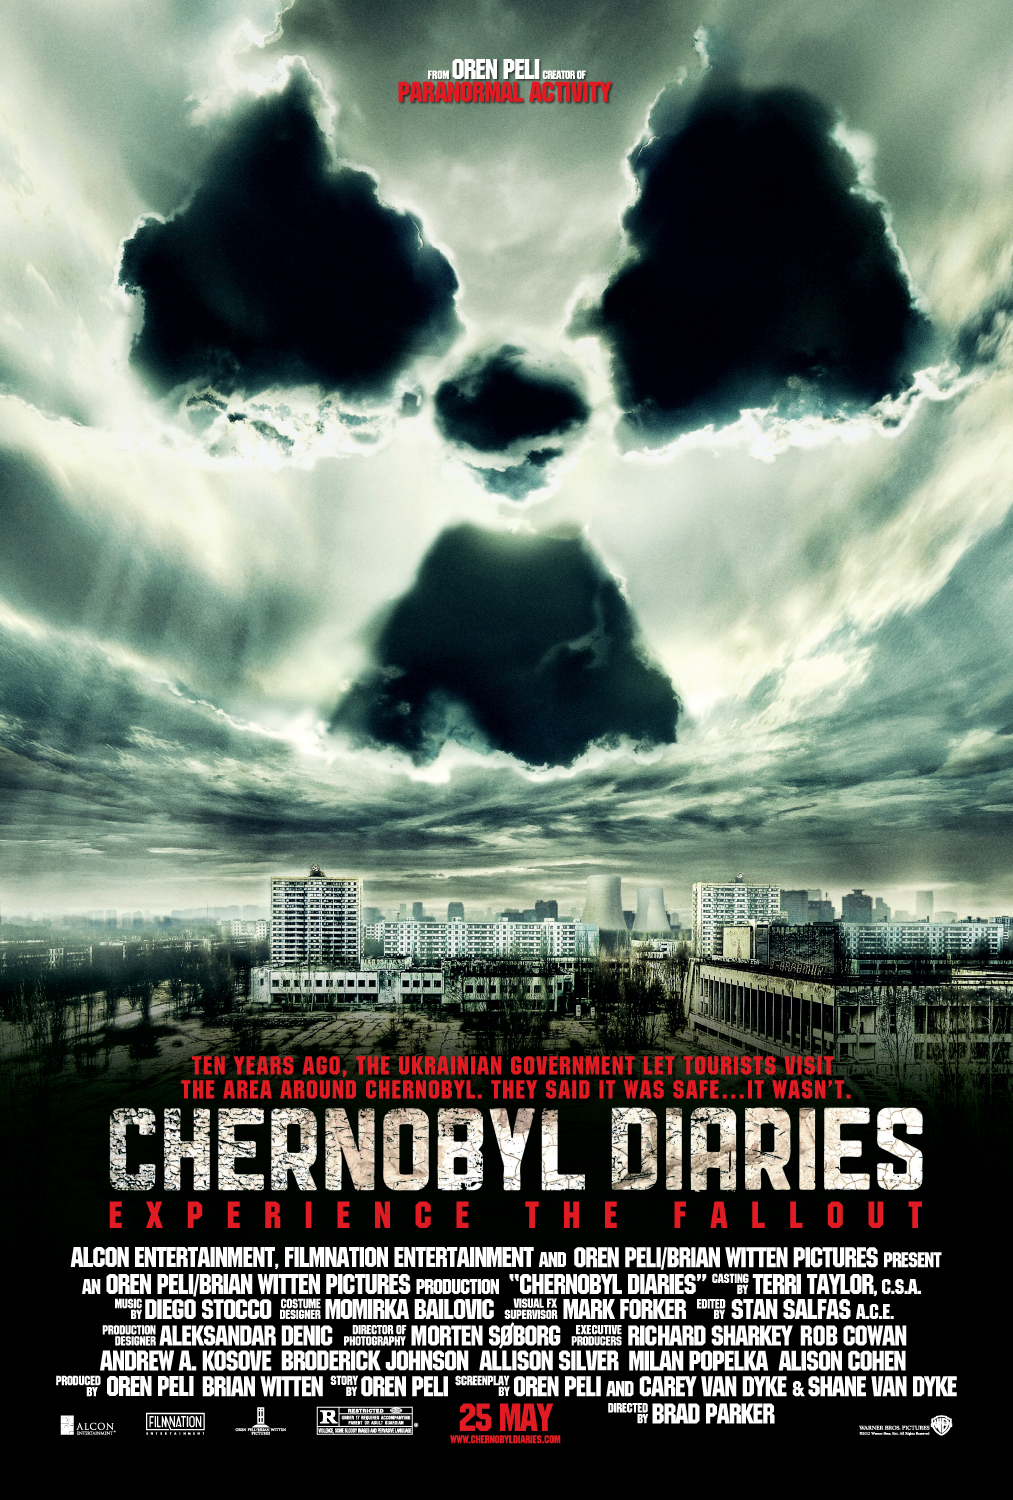 ดูหนังออนไลน์ฟรี ดูหนังใหม่ CHERNOBYL DIARIES (2012) เชอร์โนบิล เมืองร้าง มหันตภัยหลอน พากย์ไทย